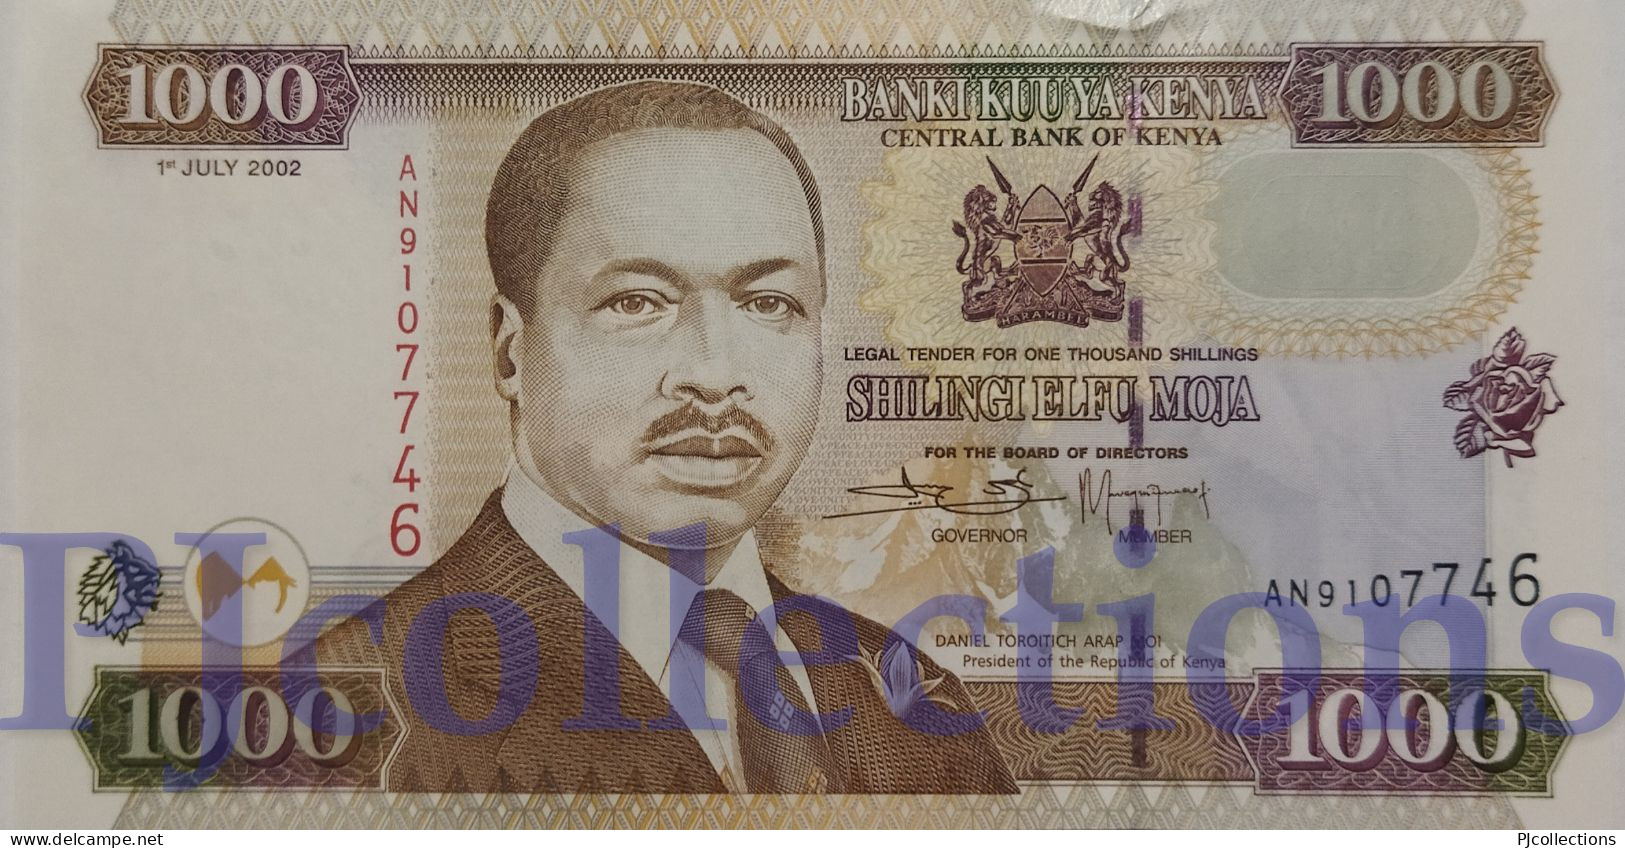 KENYA 1000 SHILLINGS 2002 PICK 40e UNC - Kenya